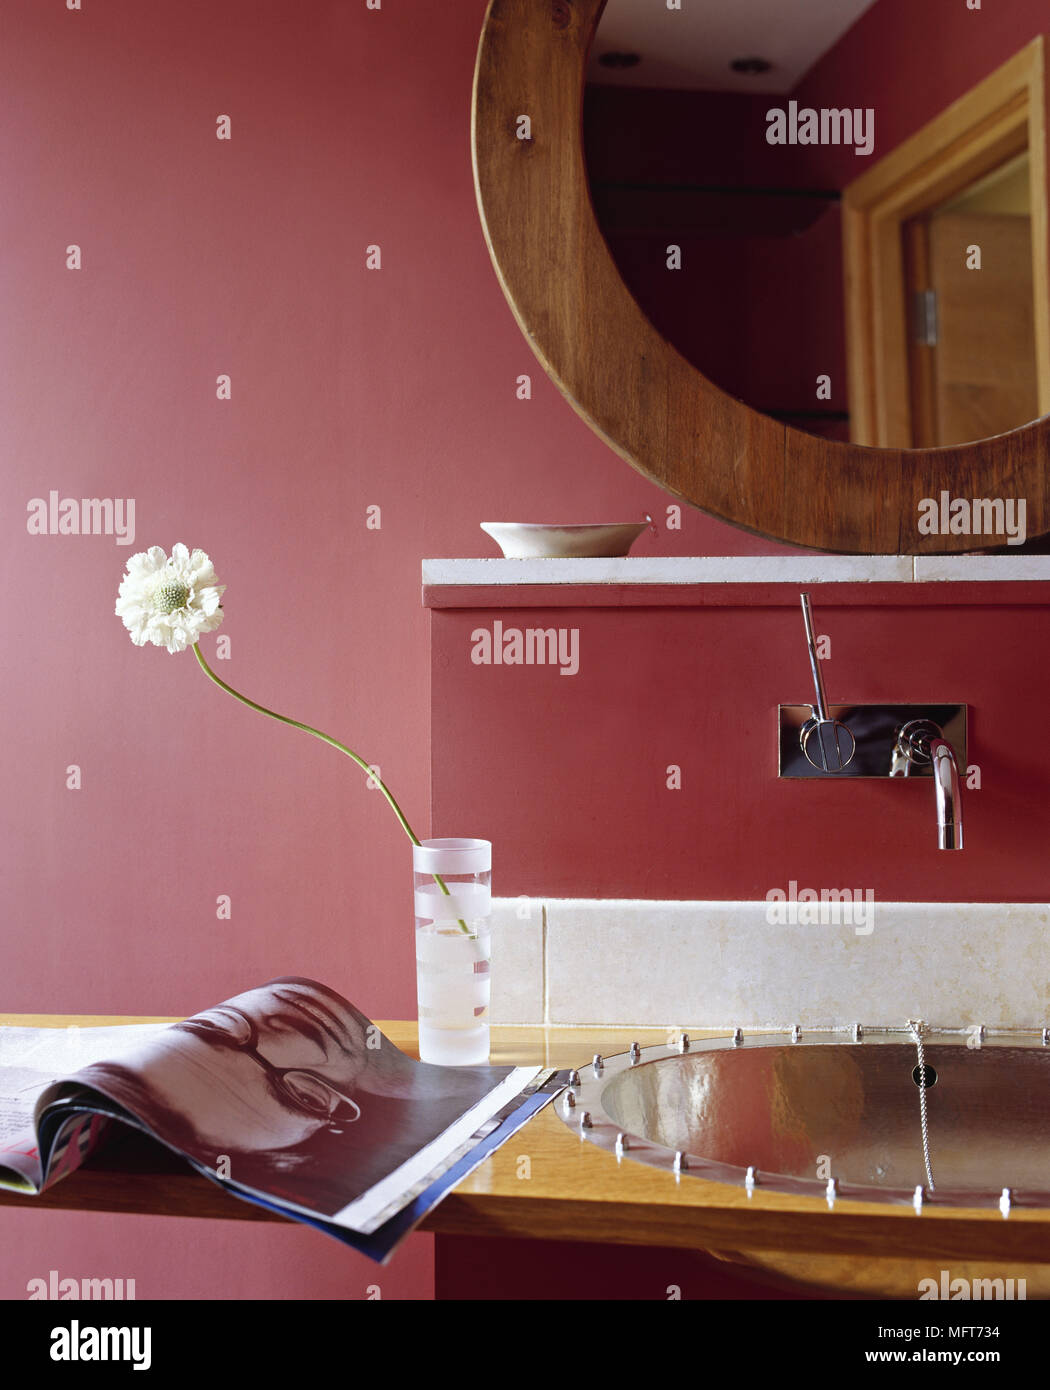 Bagno pareti rosso legno specchio incorniciato lavabo moderno chrome magazine Flower in vetro bagni interni delle piastrelle di ceramica piastrellate intorno al lavandino ciotola sul ripiano h Foto Stock